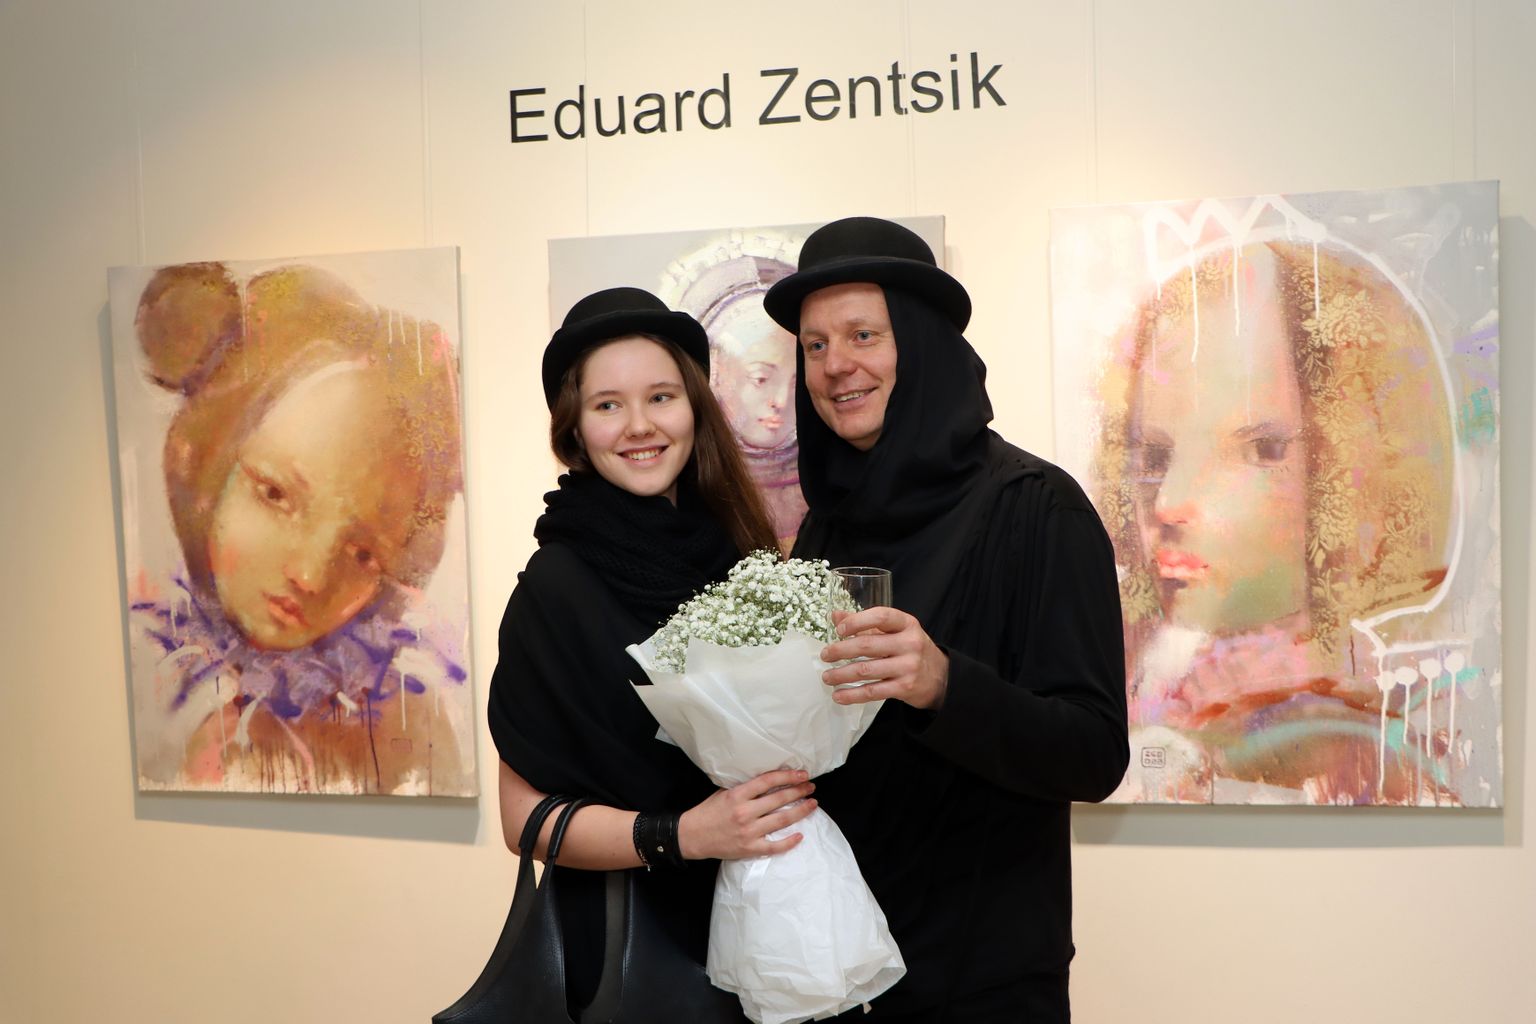 Муза вдохновляла художника Эдуарда Зеньчика не только во время создания картин, но и на открытии выставки.